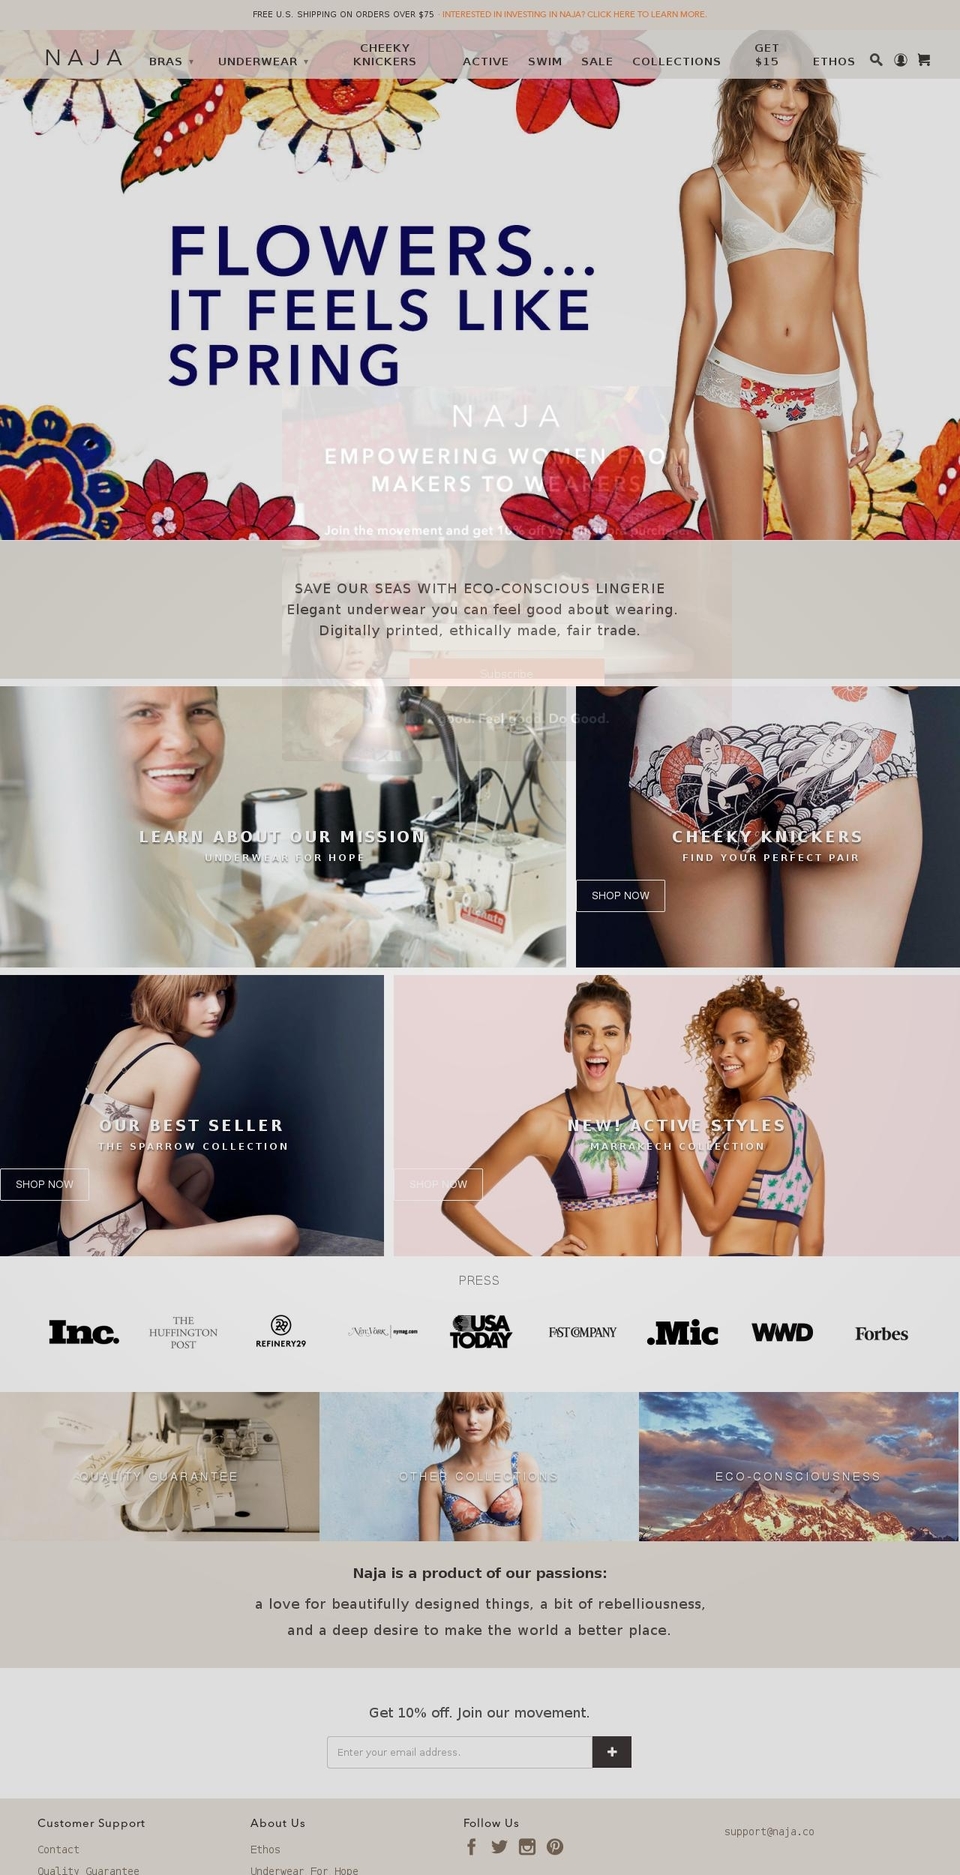 vectr-naja-theme-prod-. Shopify theme site example naja.co